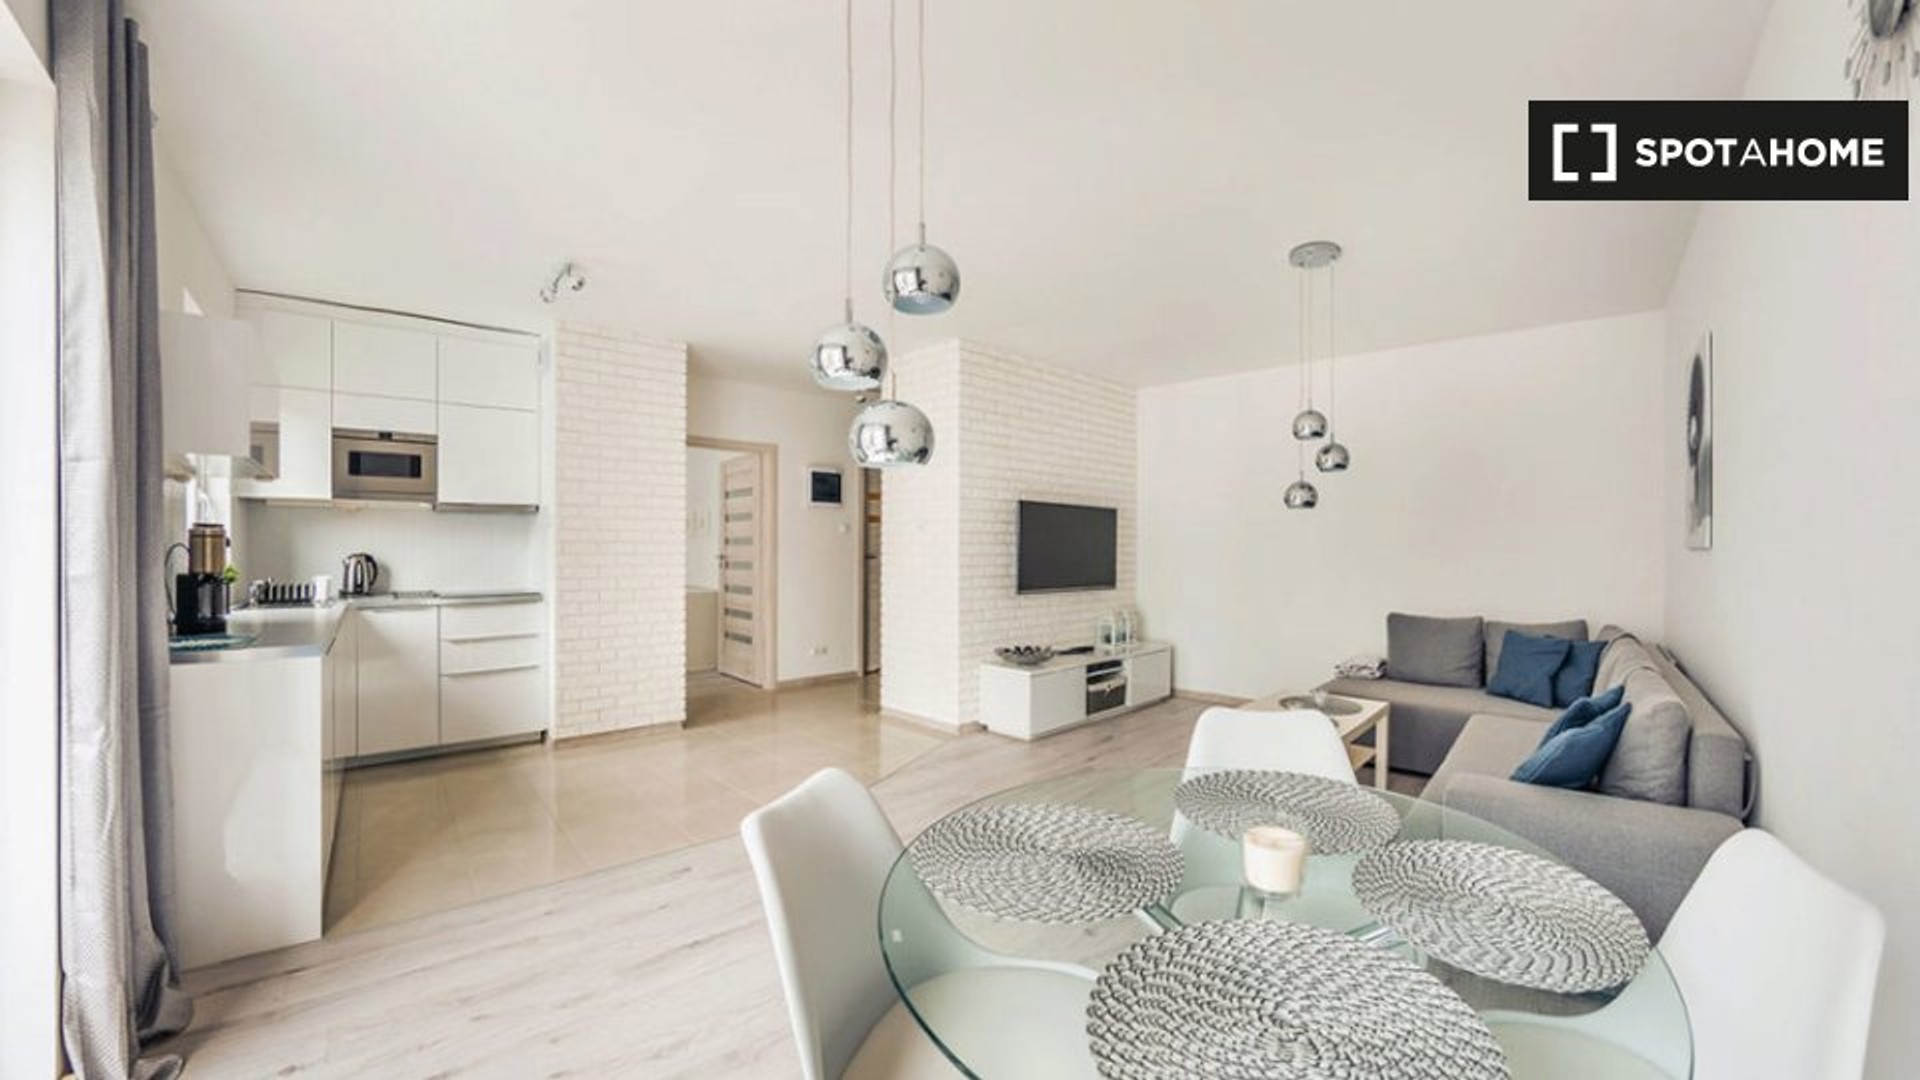 Apartamento moderno e brilhante em Danzigue